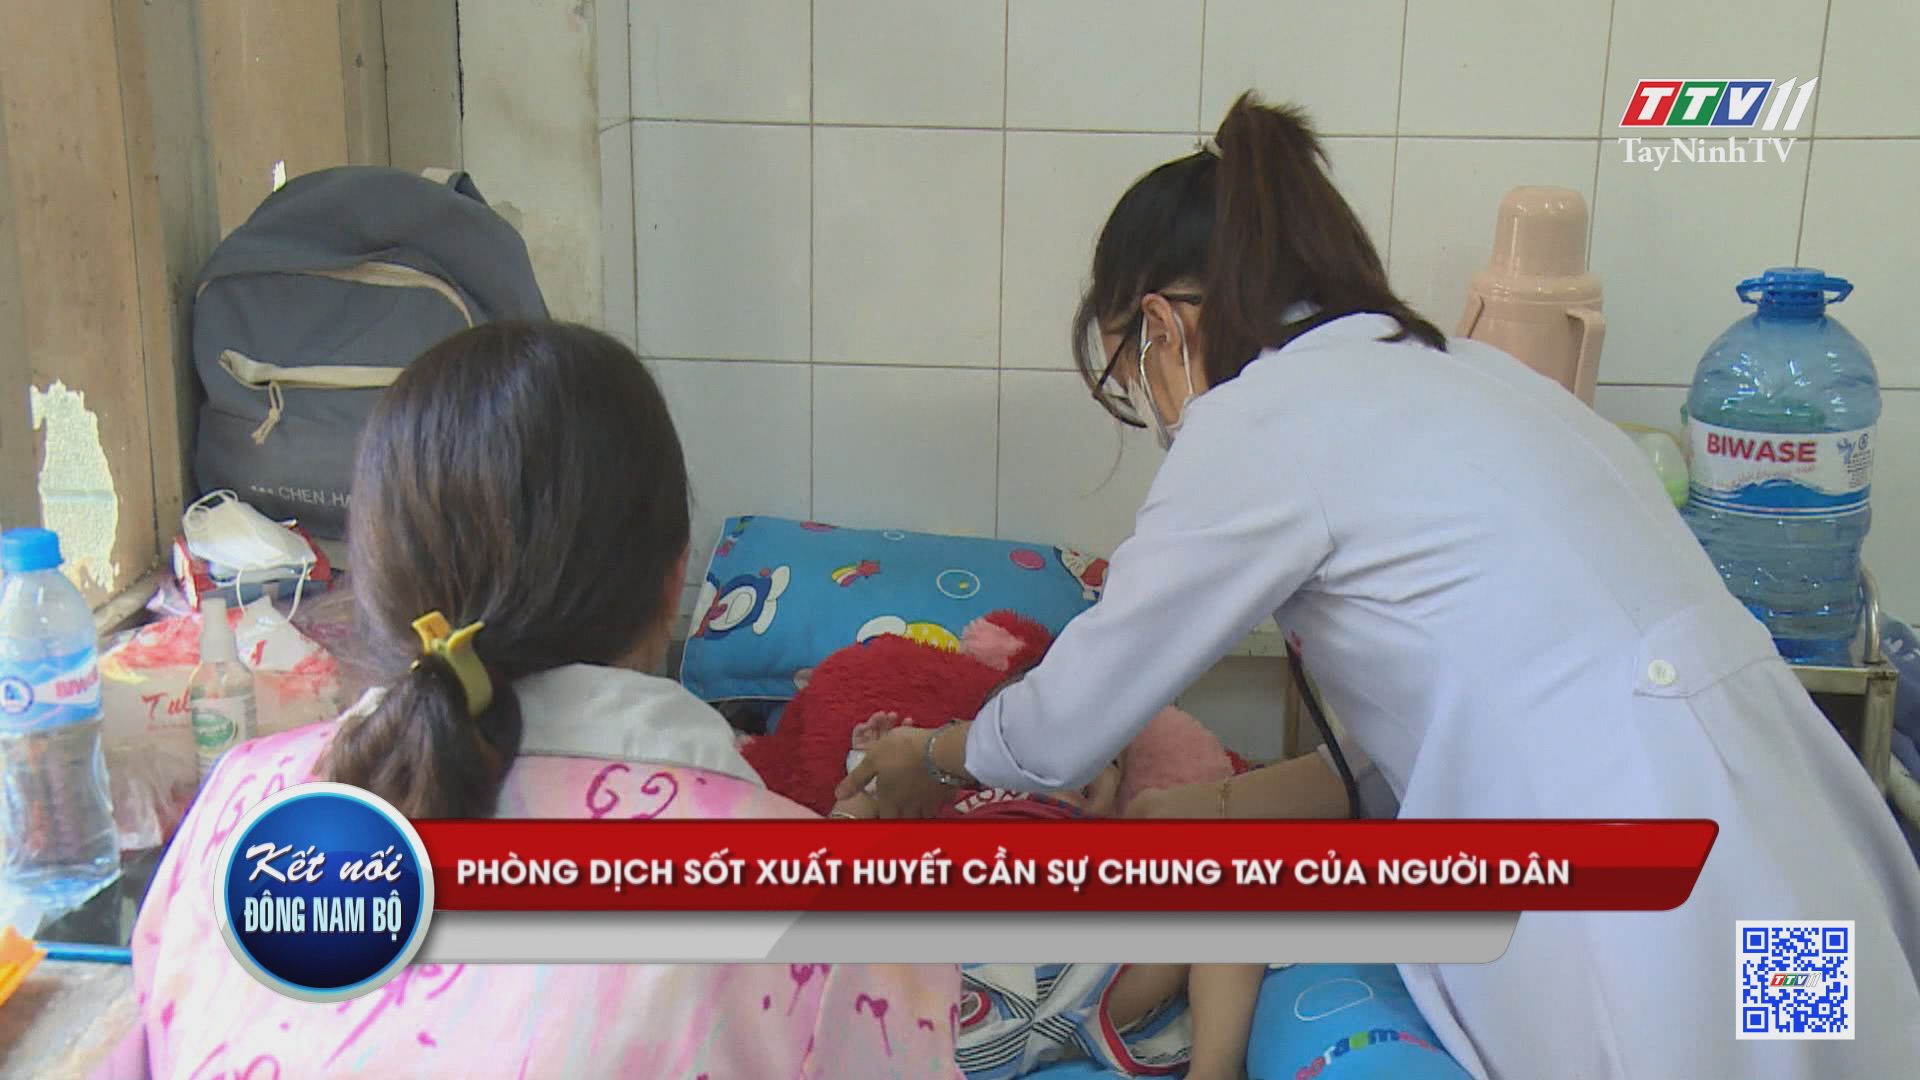 Phòng dịch sốt xuất huyết cần sự chung tay của người dân | Kết nối Đông Nam Bộ | TayNinhTV